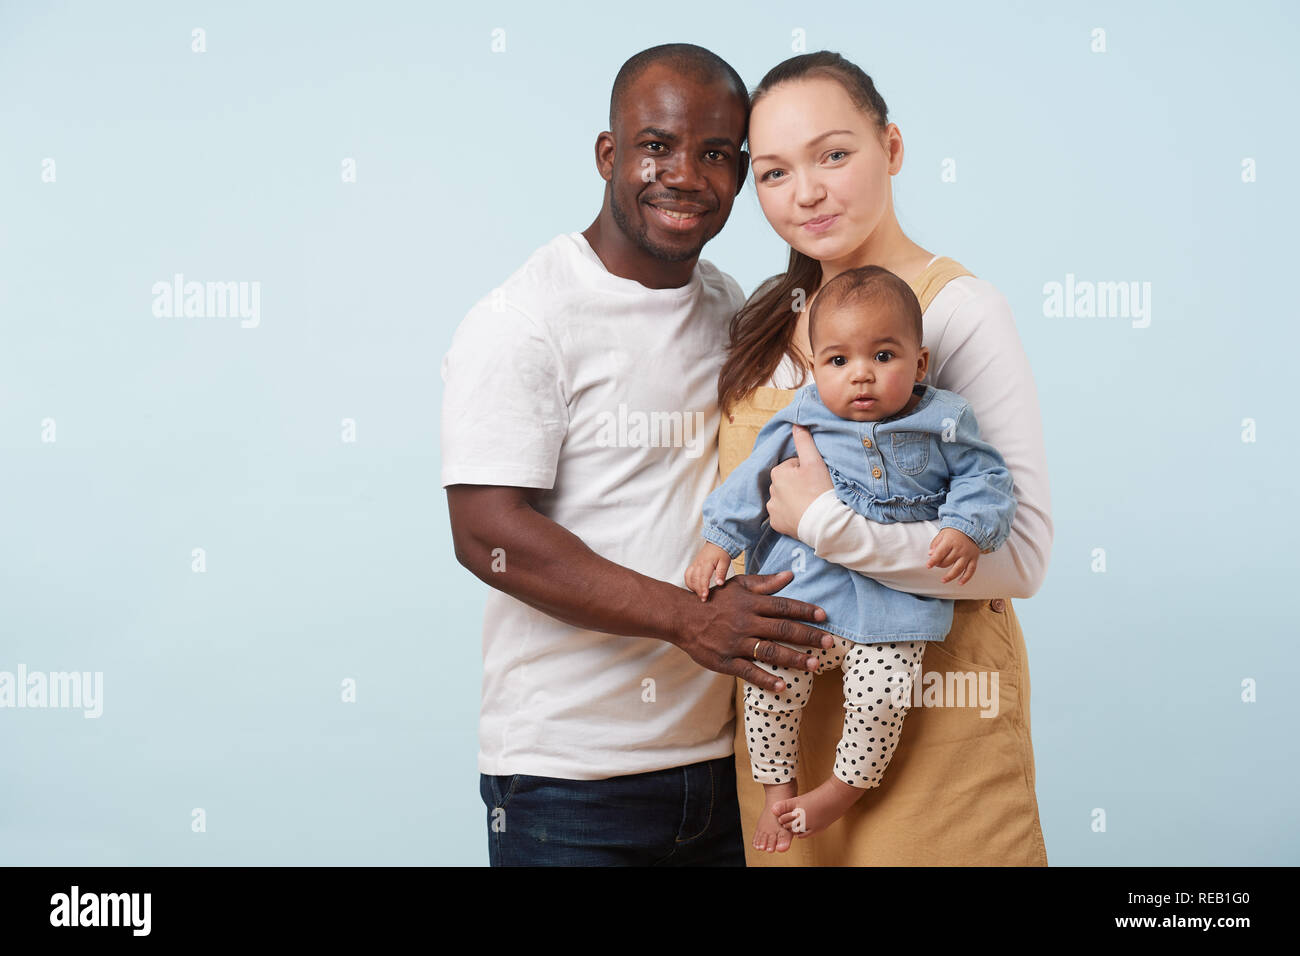 Black baby white family has White woman